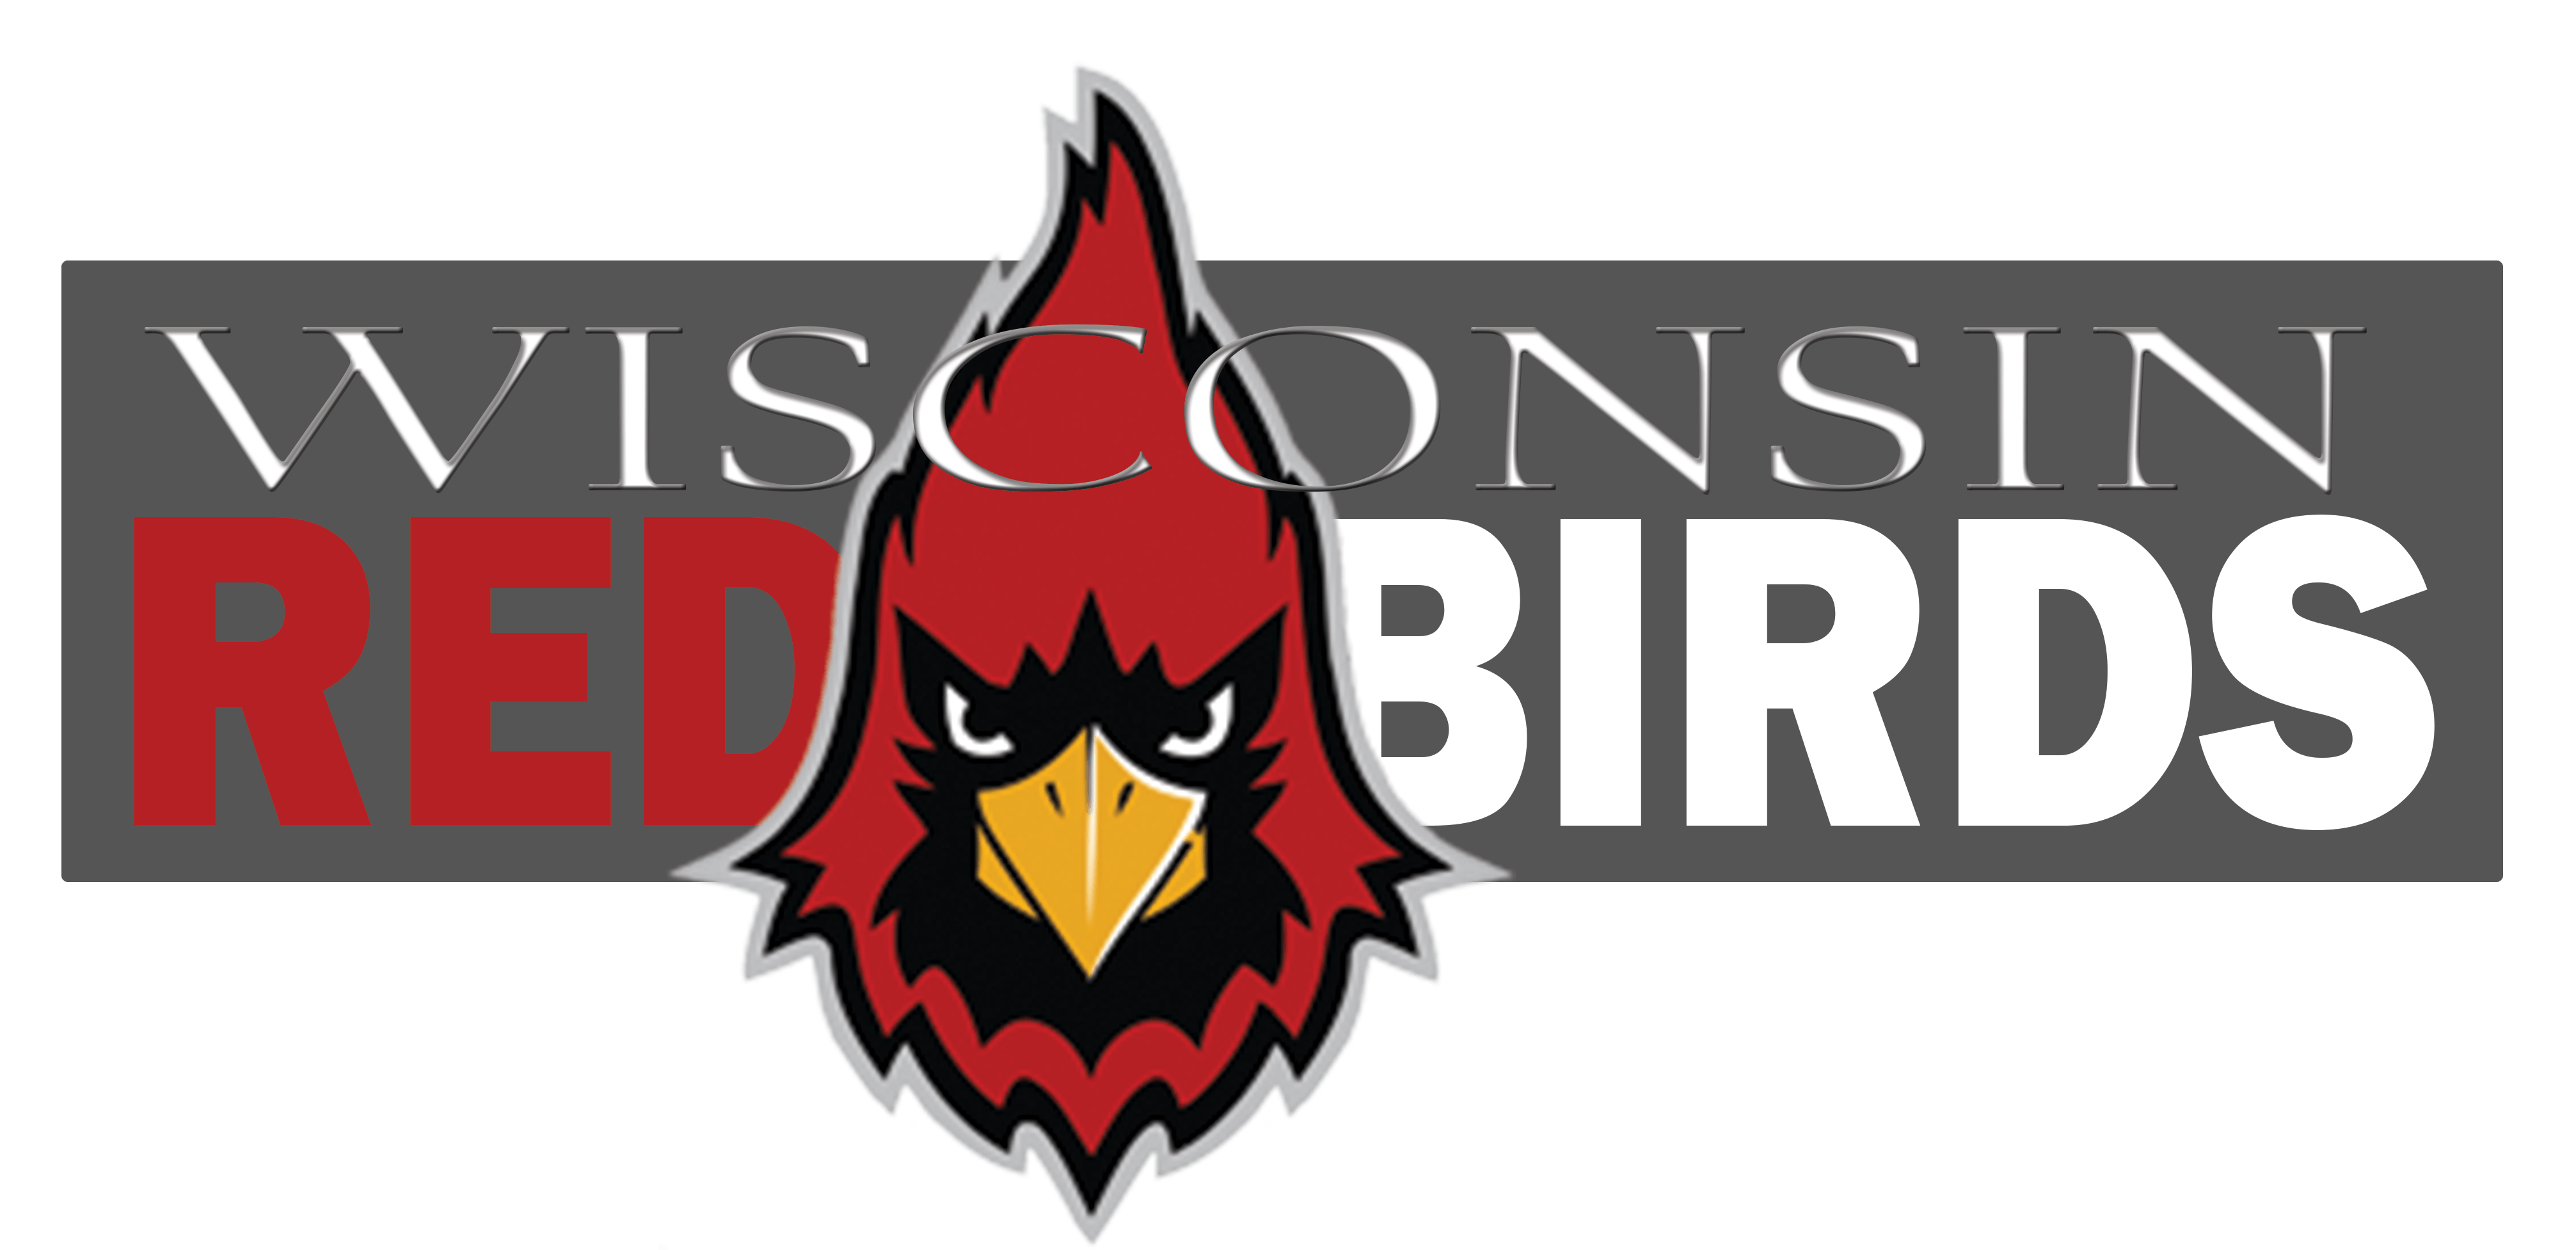 Red Birds of All Logo - Wisconsin RedBirds